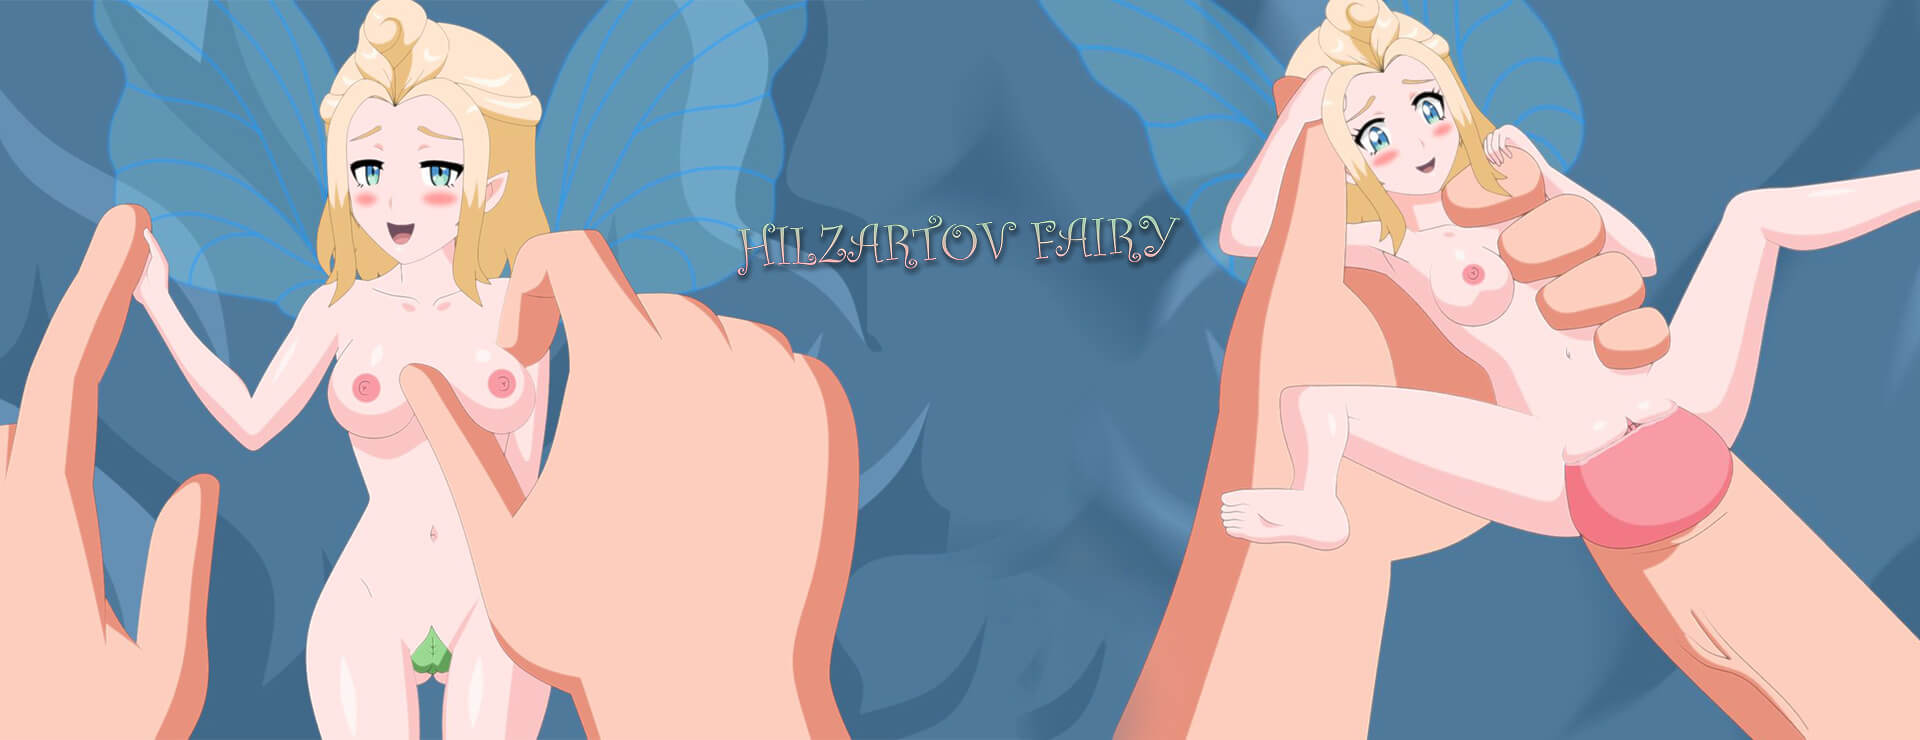 Hilzartov Fairy - Roman Visuel Jeu